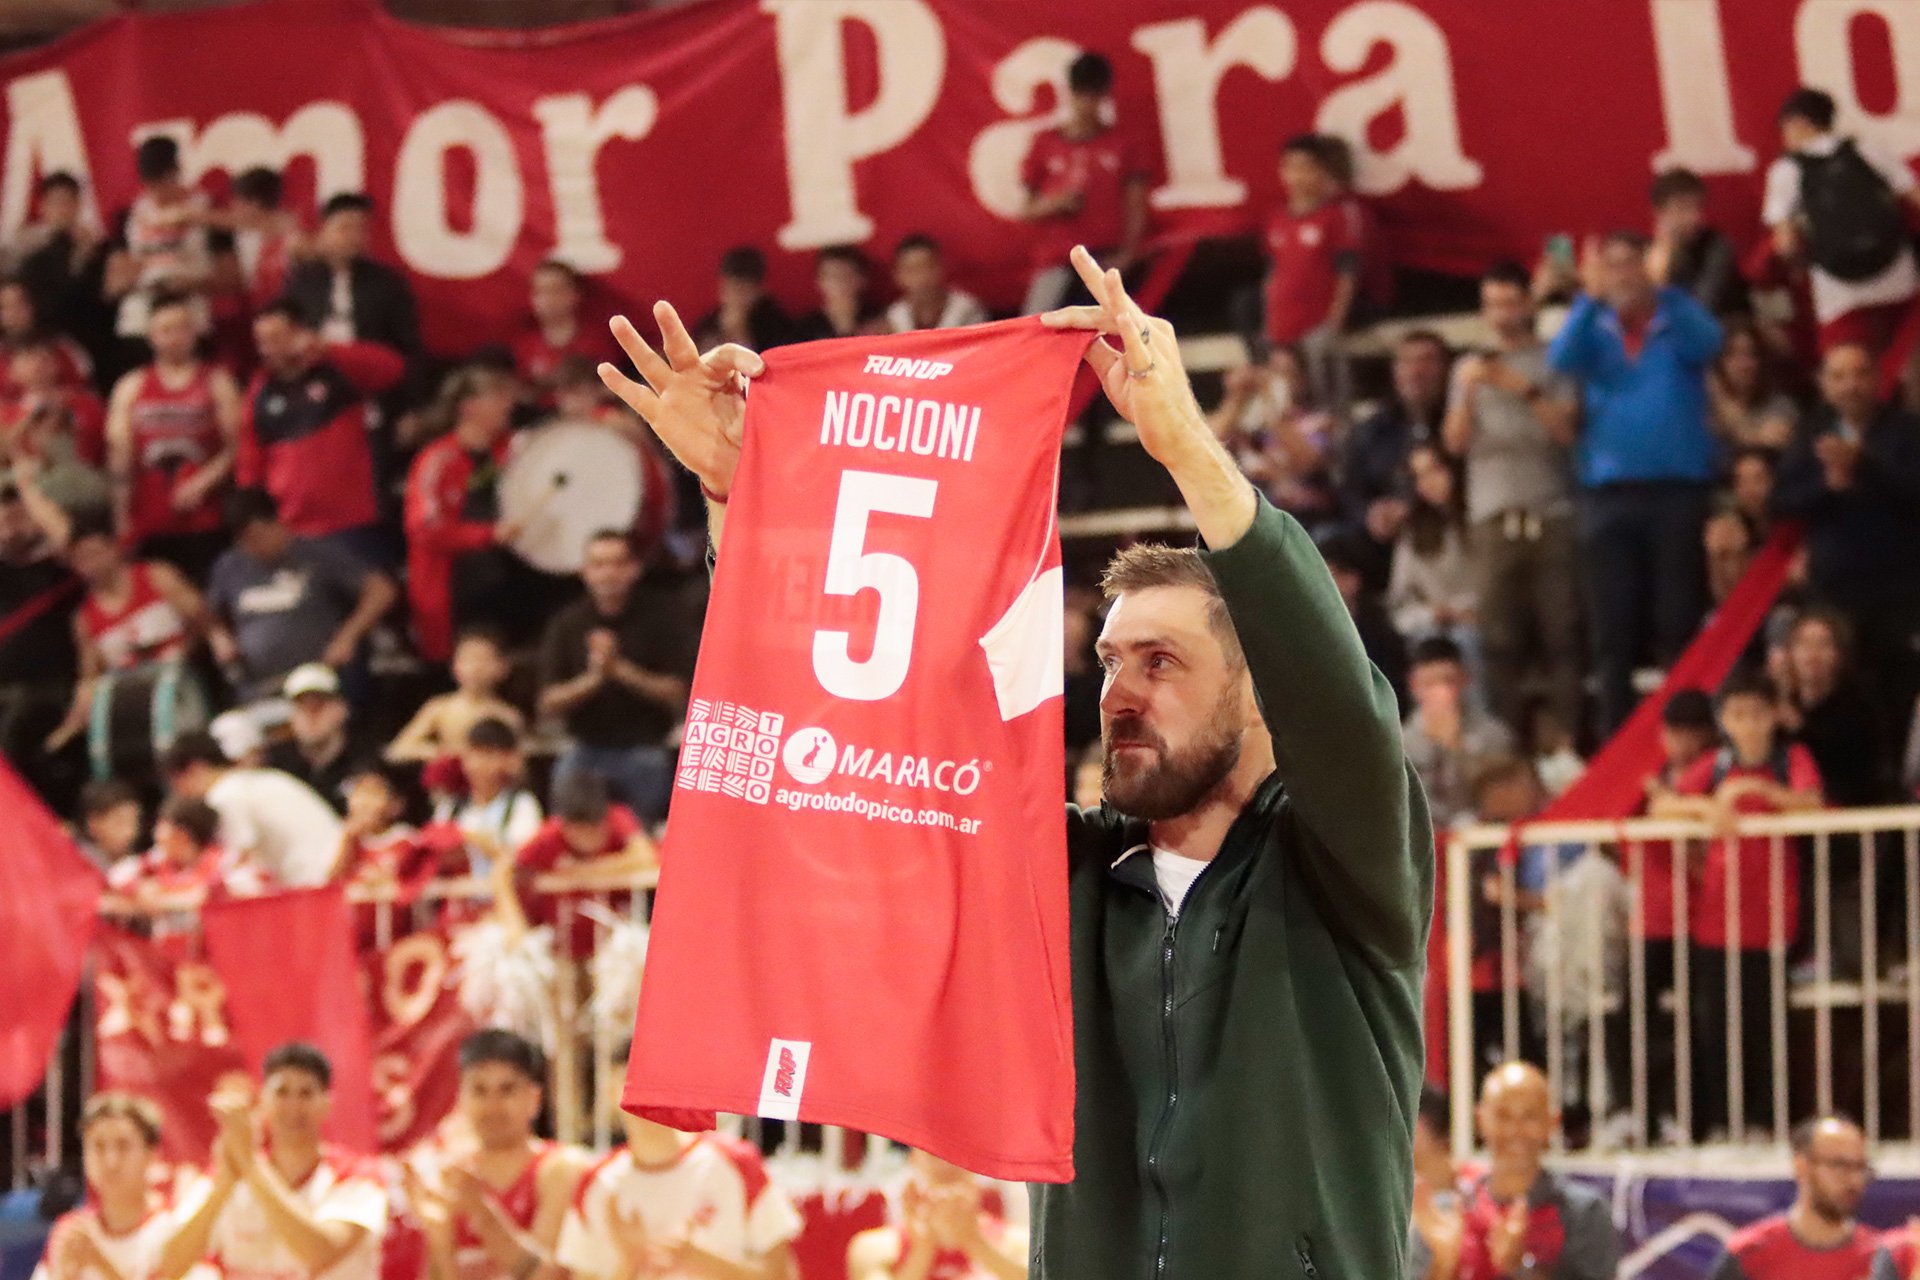 En un “Gigante” explotado de hinchas, Sportivo Independiente brindó emotivo homenaje a Andrés “Chapu” Nocioni, una gloria histórica del “Rojo”